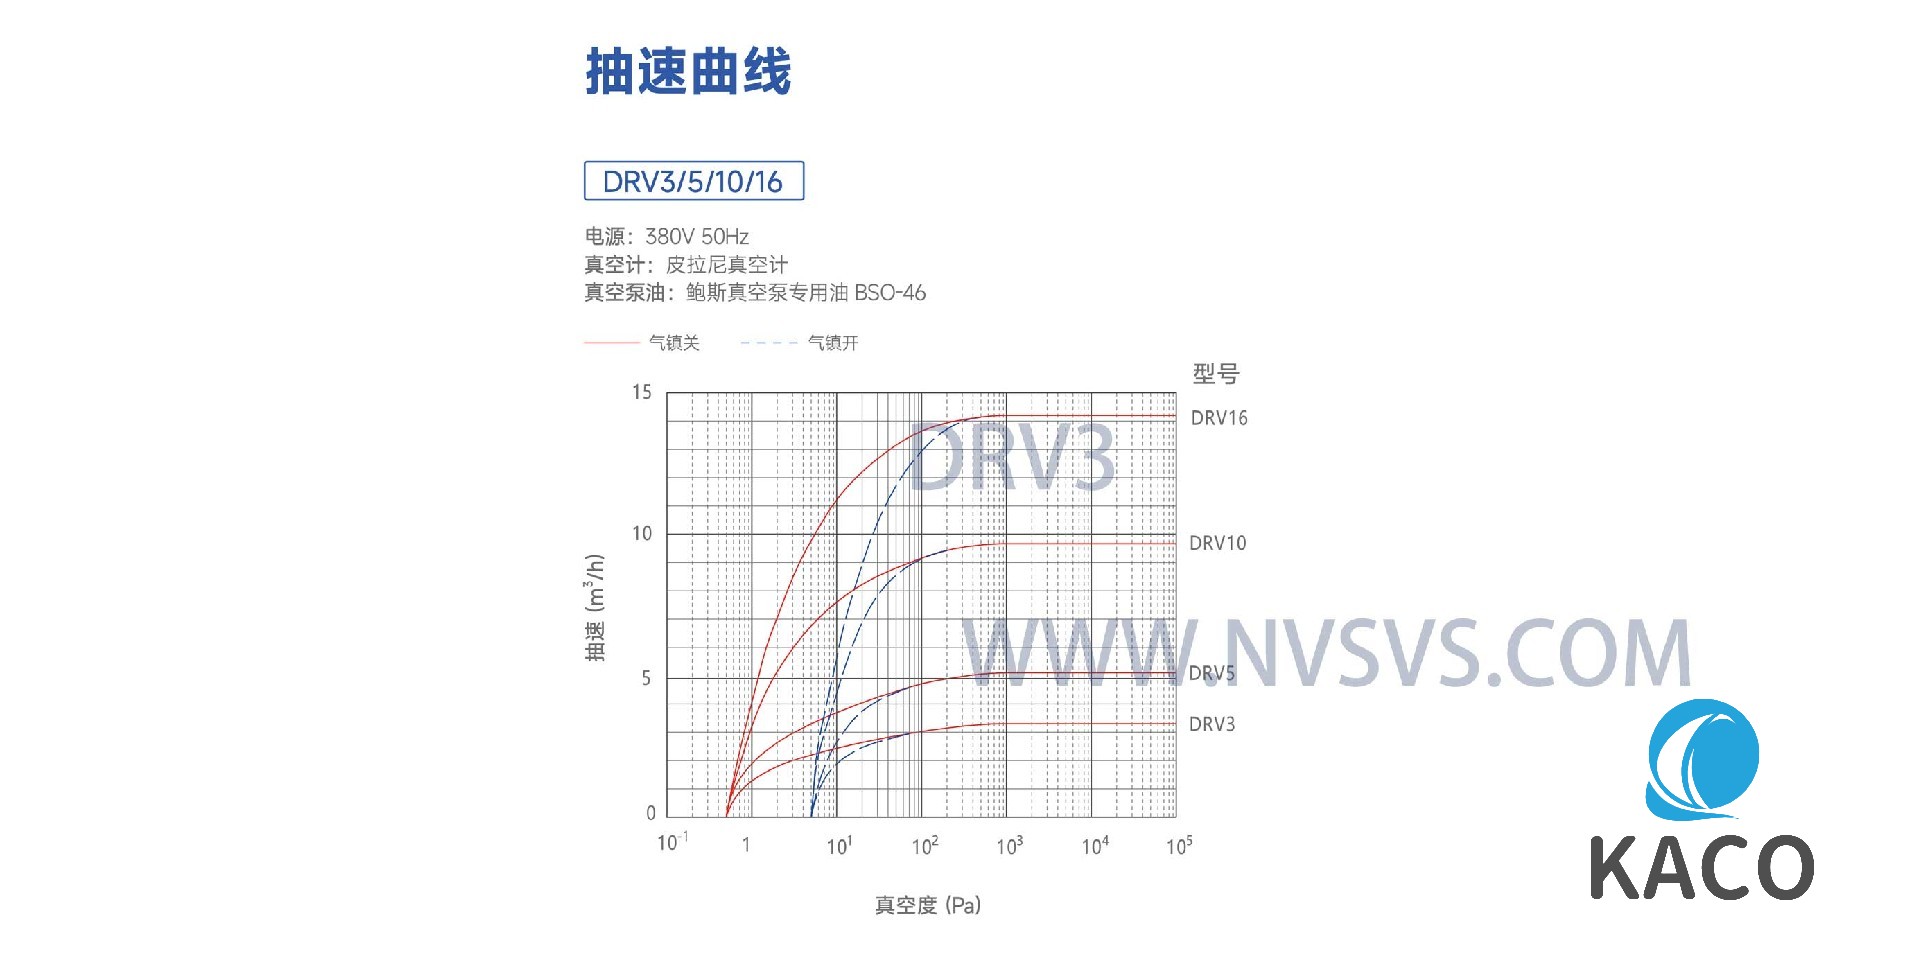 DRV3-NVSVS-3.jpg